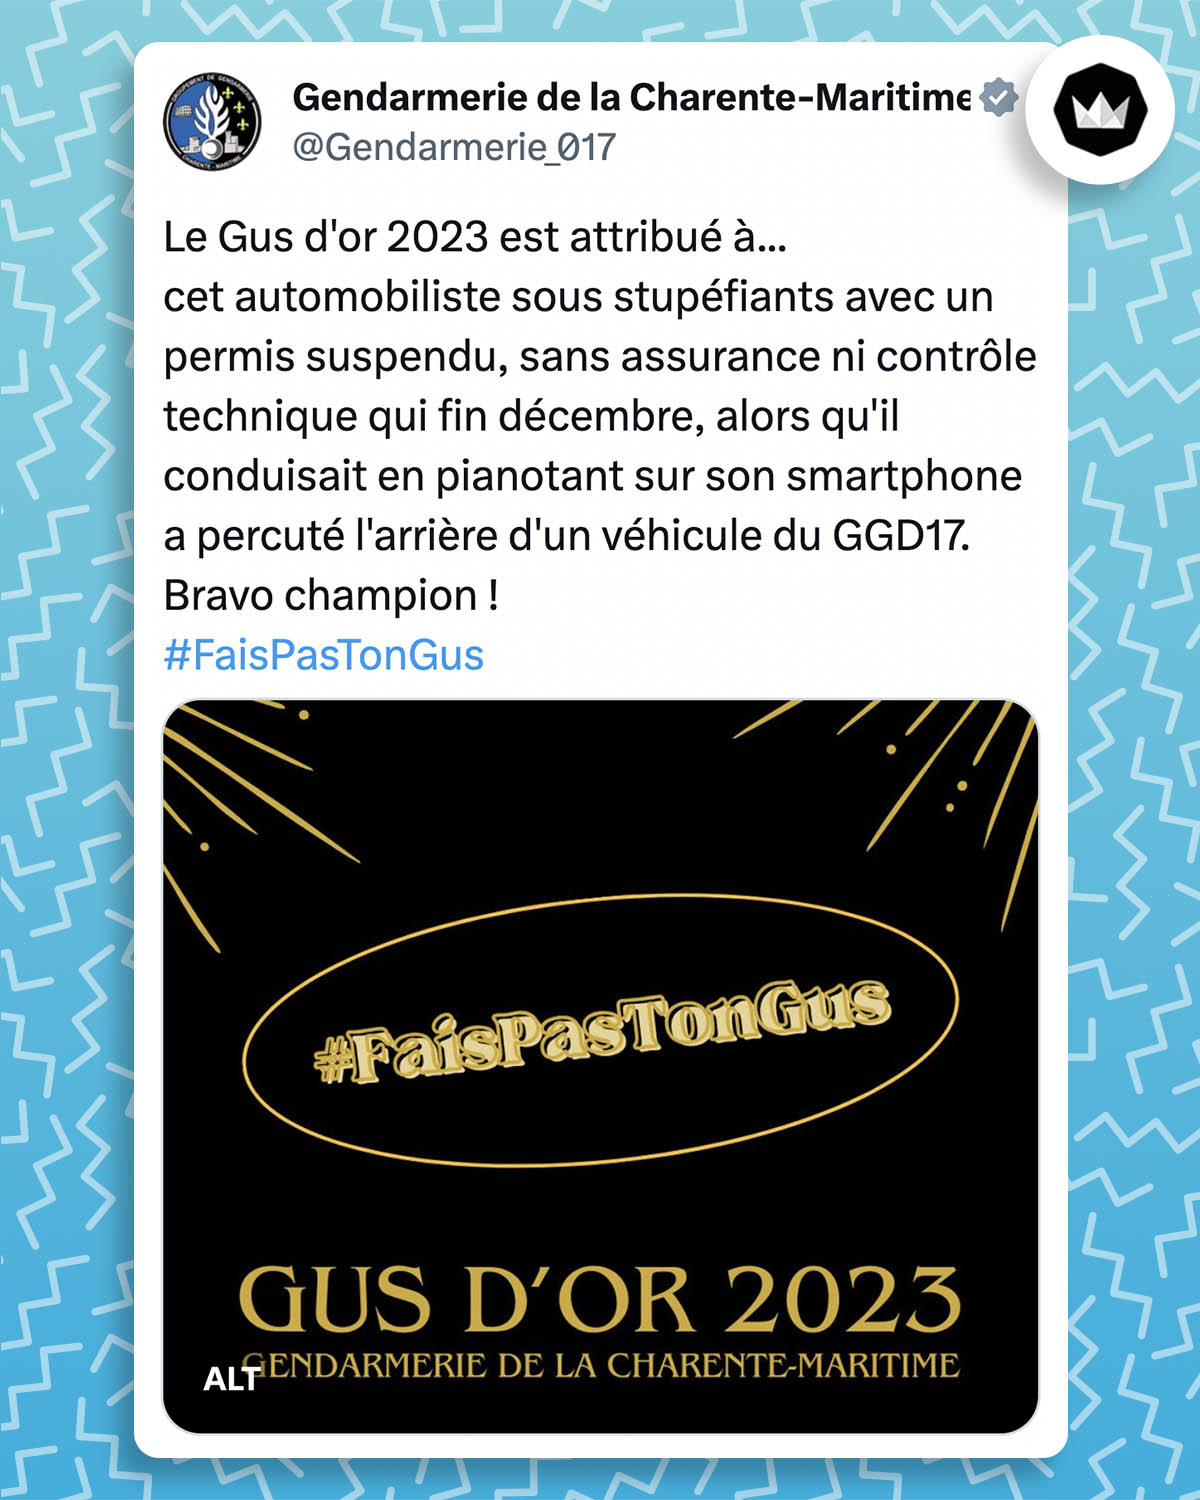 Tweet de la gendarmerie de la Charente-Maritime : Le Gus d'or 2023 est attribué à... cet automobiliste sous stupéfiants avec un permis suspendu, sans assurance ni contrôle technique qui fin décembre, alors qu'il conduisait en pianotant sur son smartphone a percuté l'arrière d'un véhicule du GGD17. Bravo champion ! #FaisPasTonGus